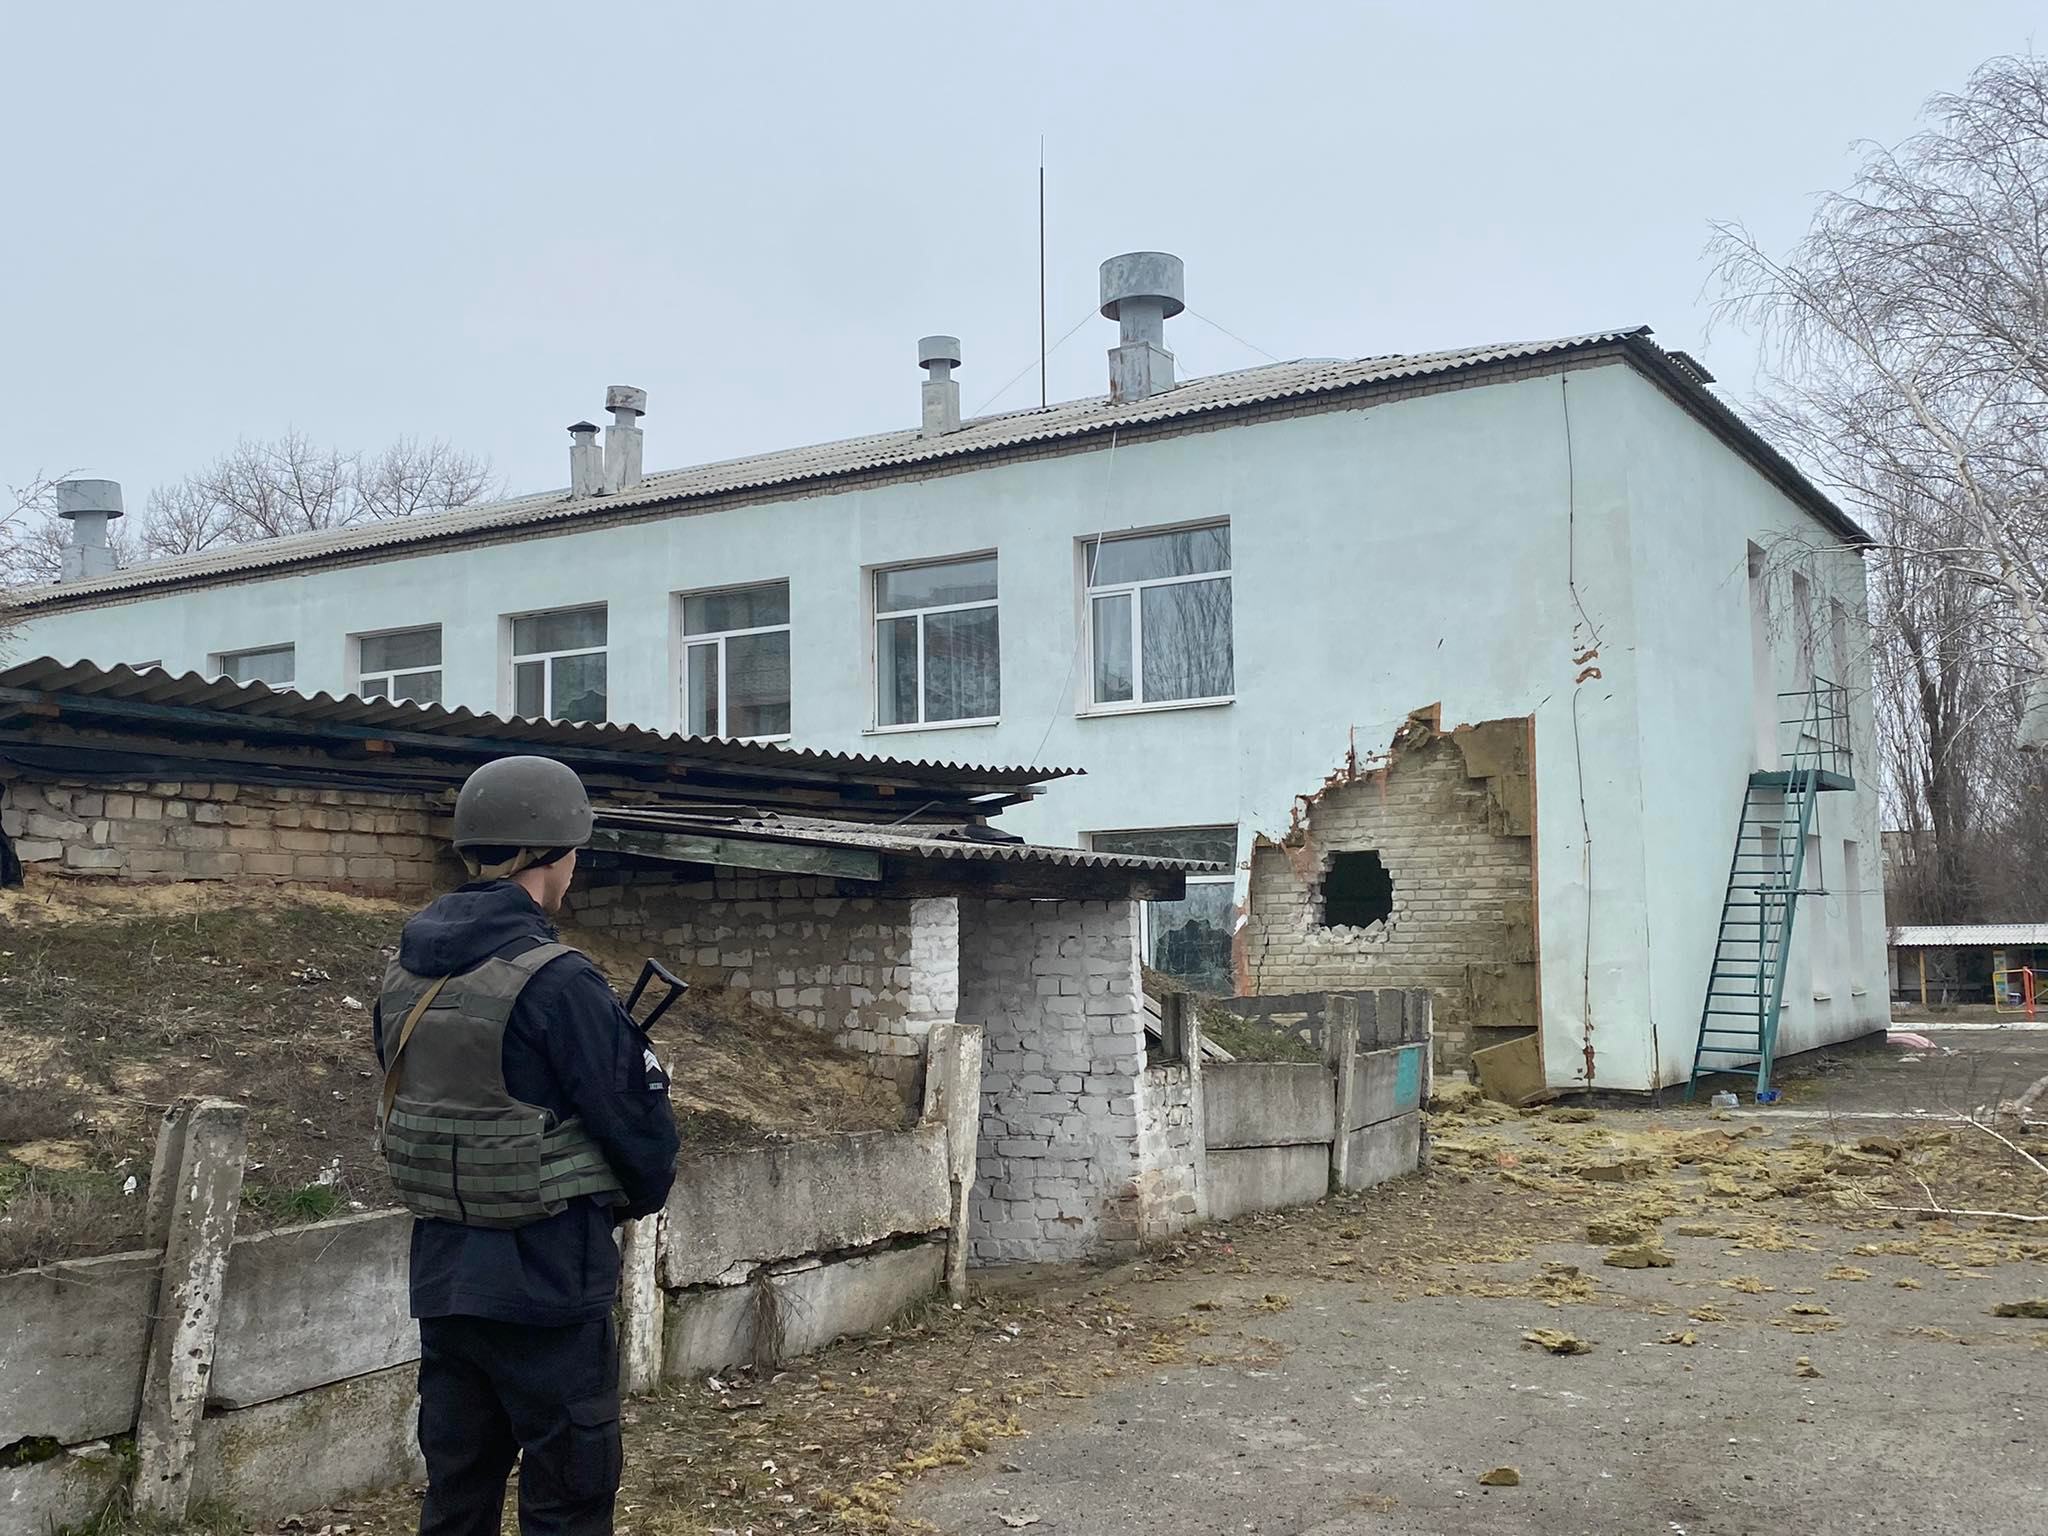 Експертка про загострення на Донбасі: зараз є ризик бути надто дипломатичними